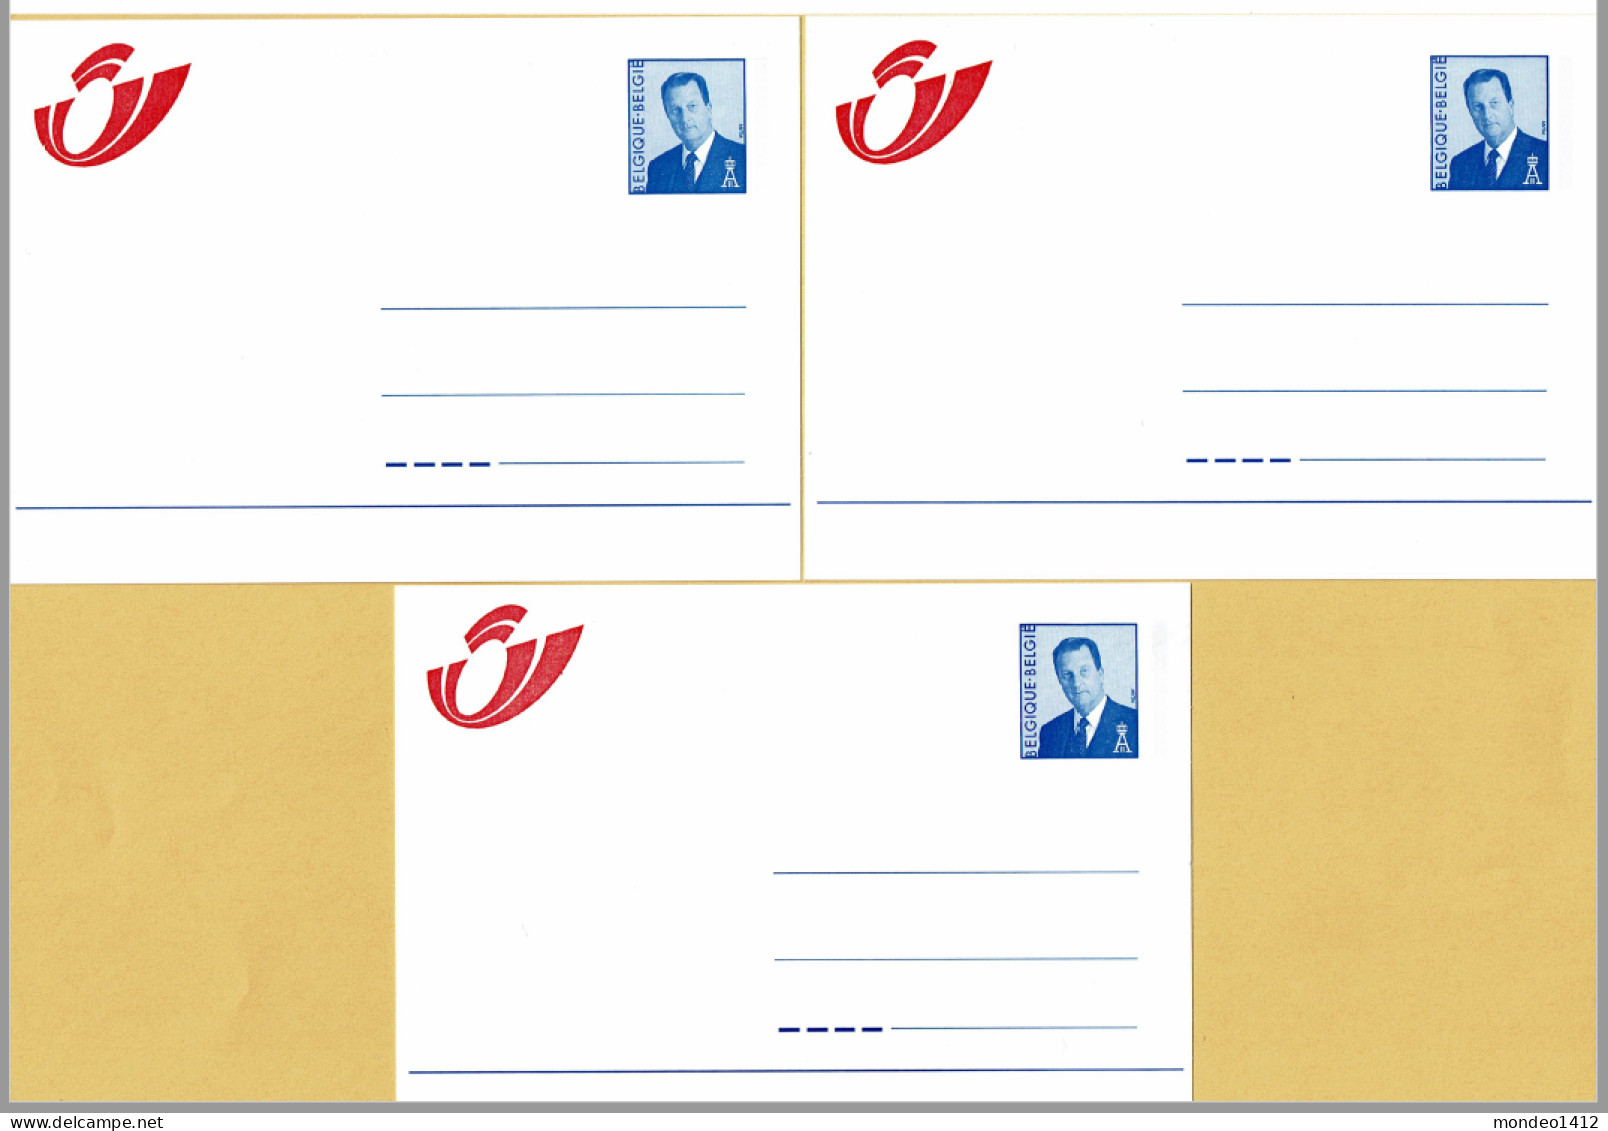 1998 - Briefkaarten - Mutapost Nieuw Postlogo - Adresverandering - Compleet N-F-D - Avis Changement Adresse